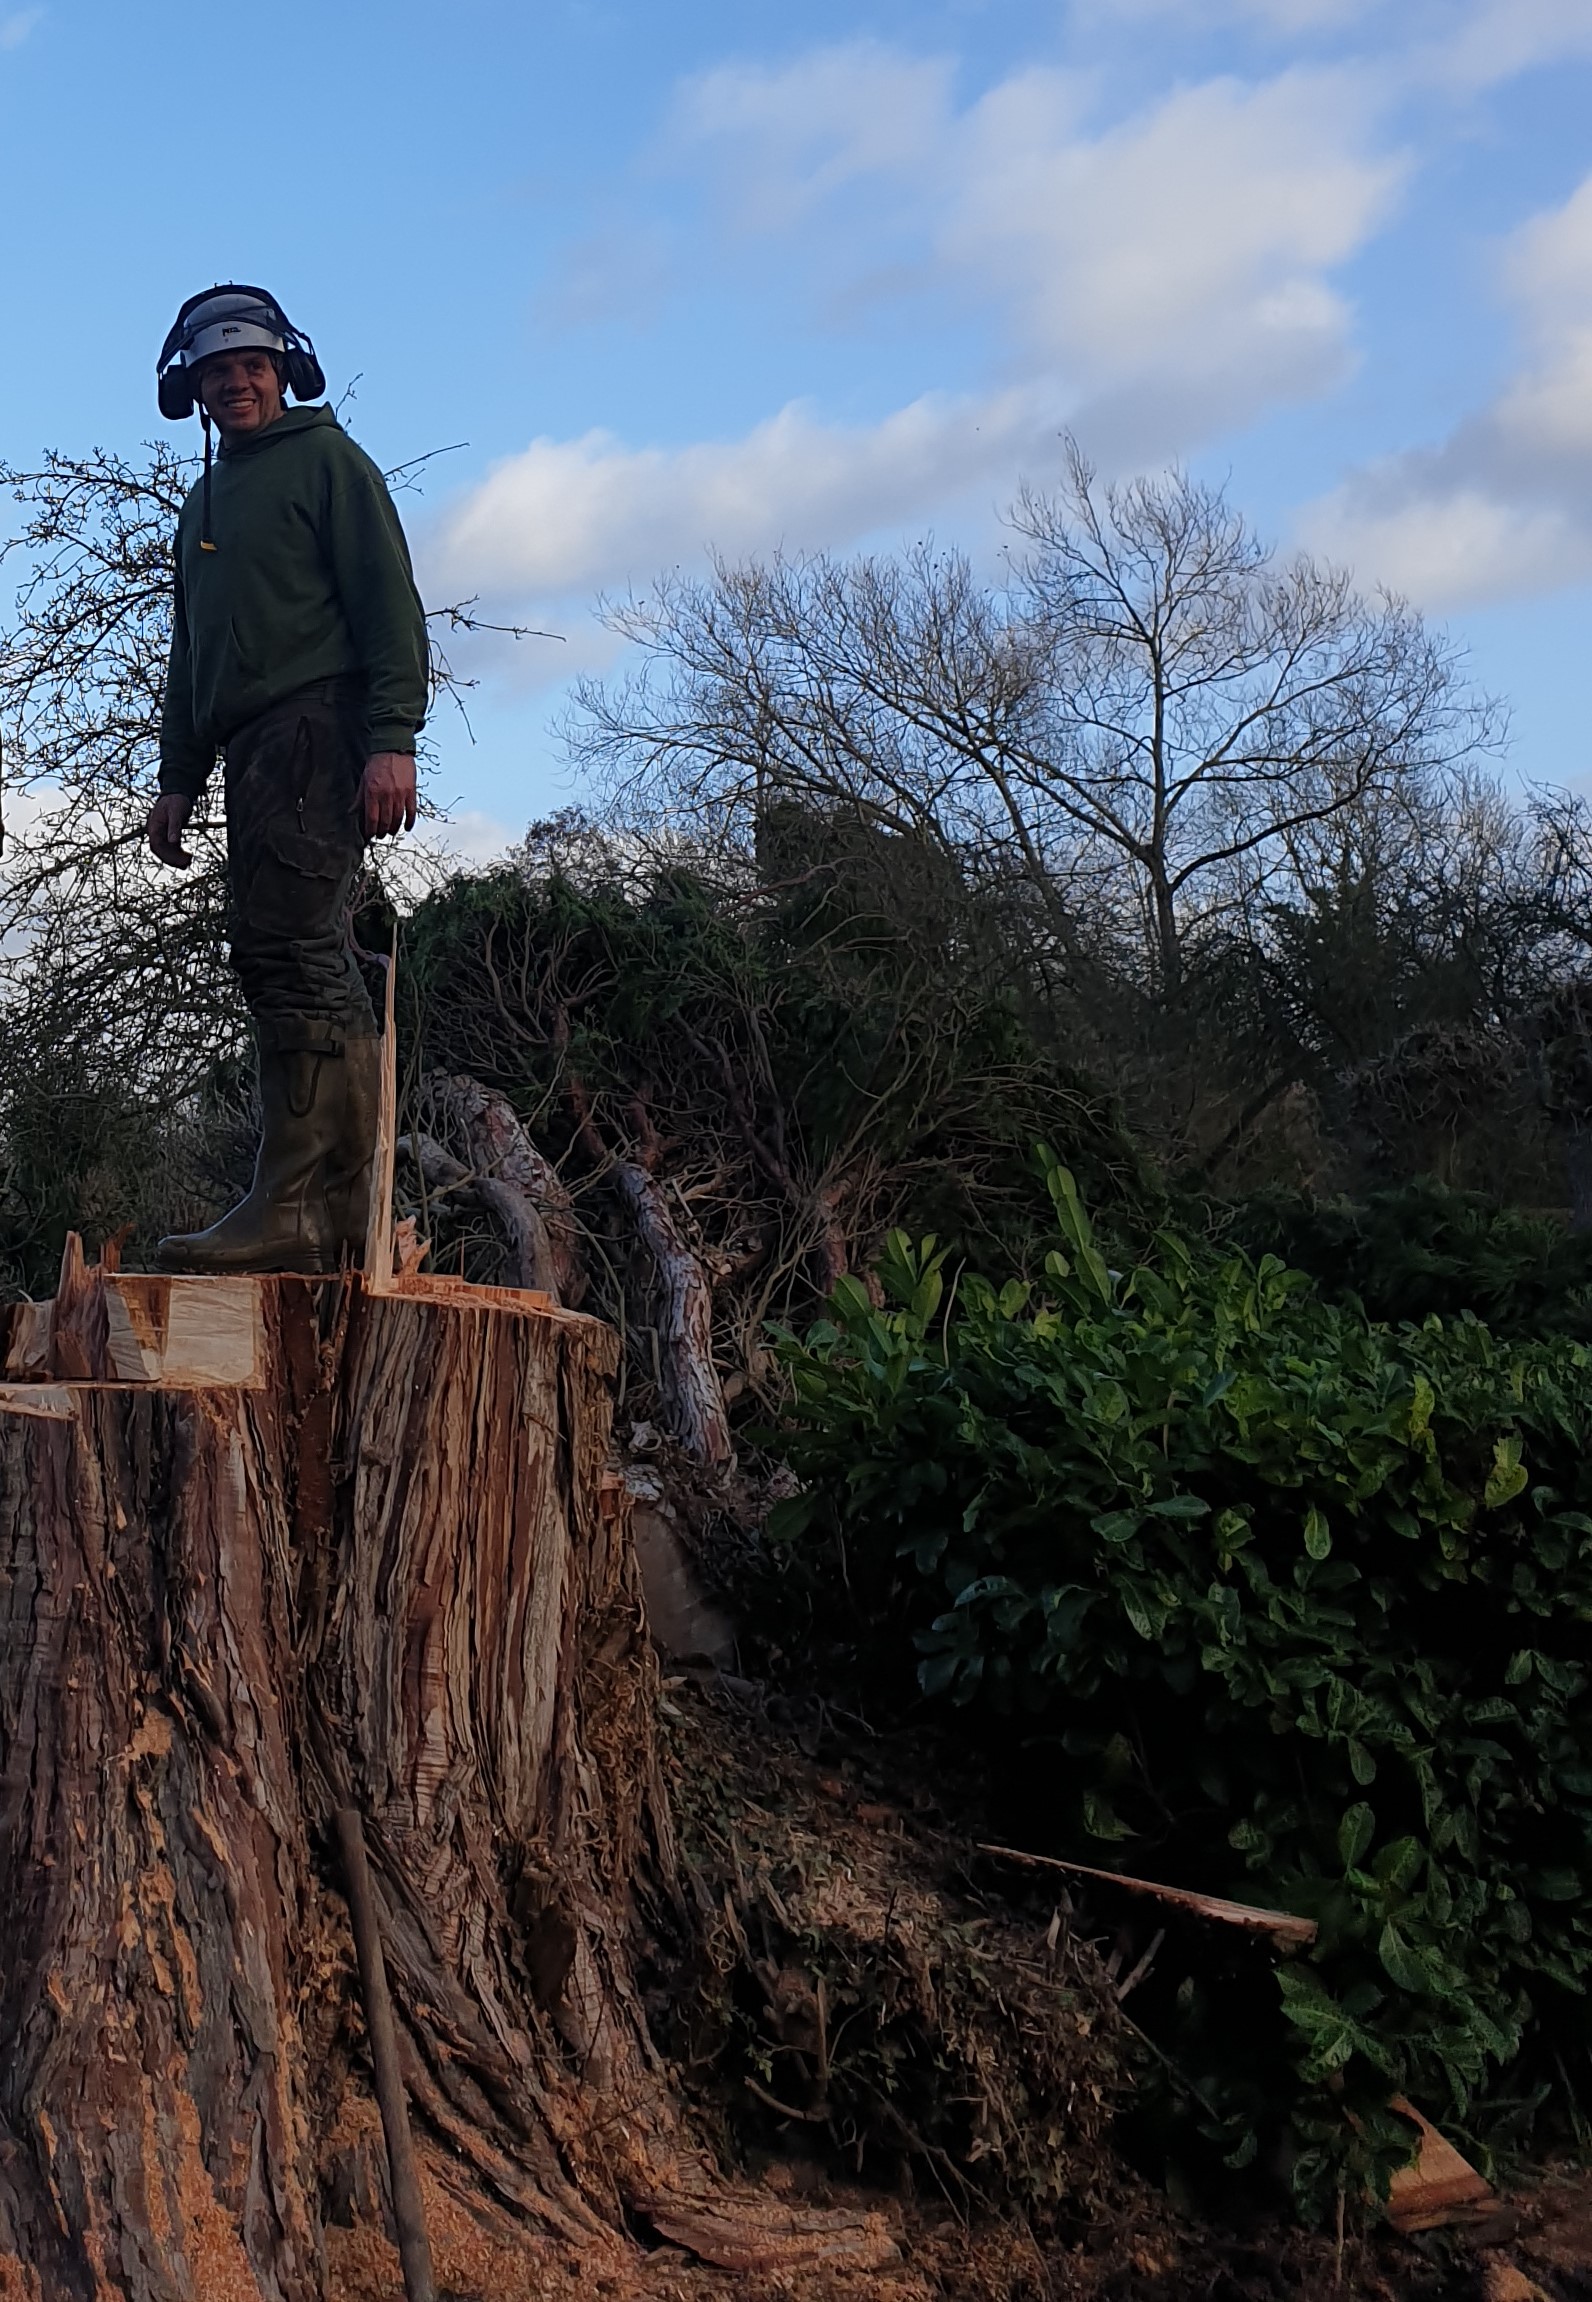 Gareth stood on large tree stump